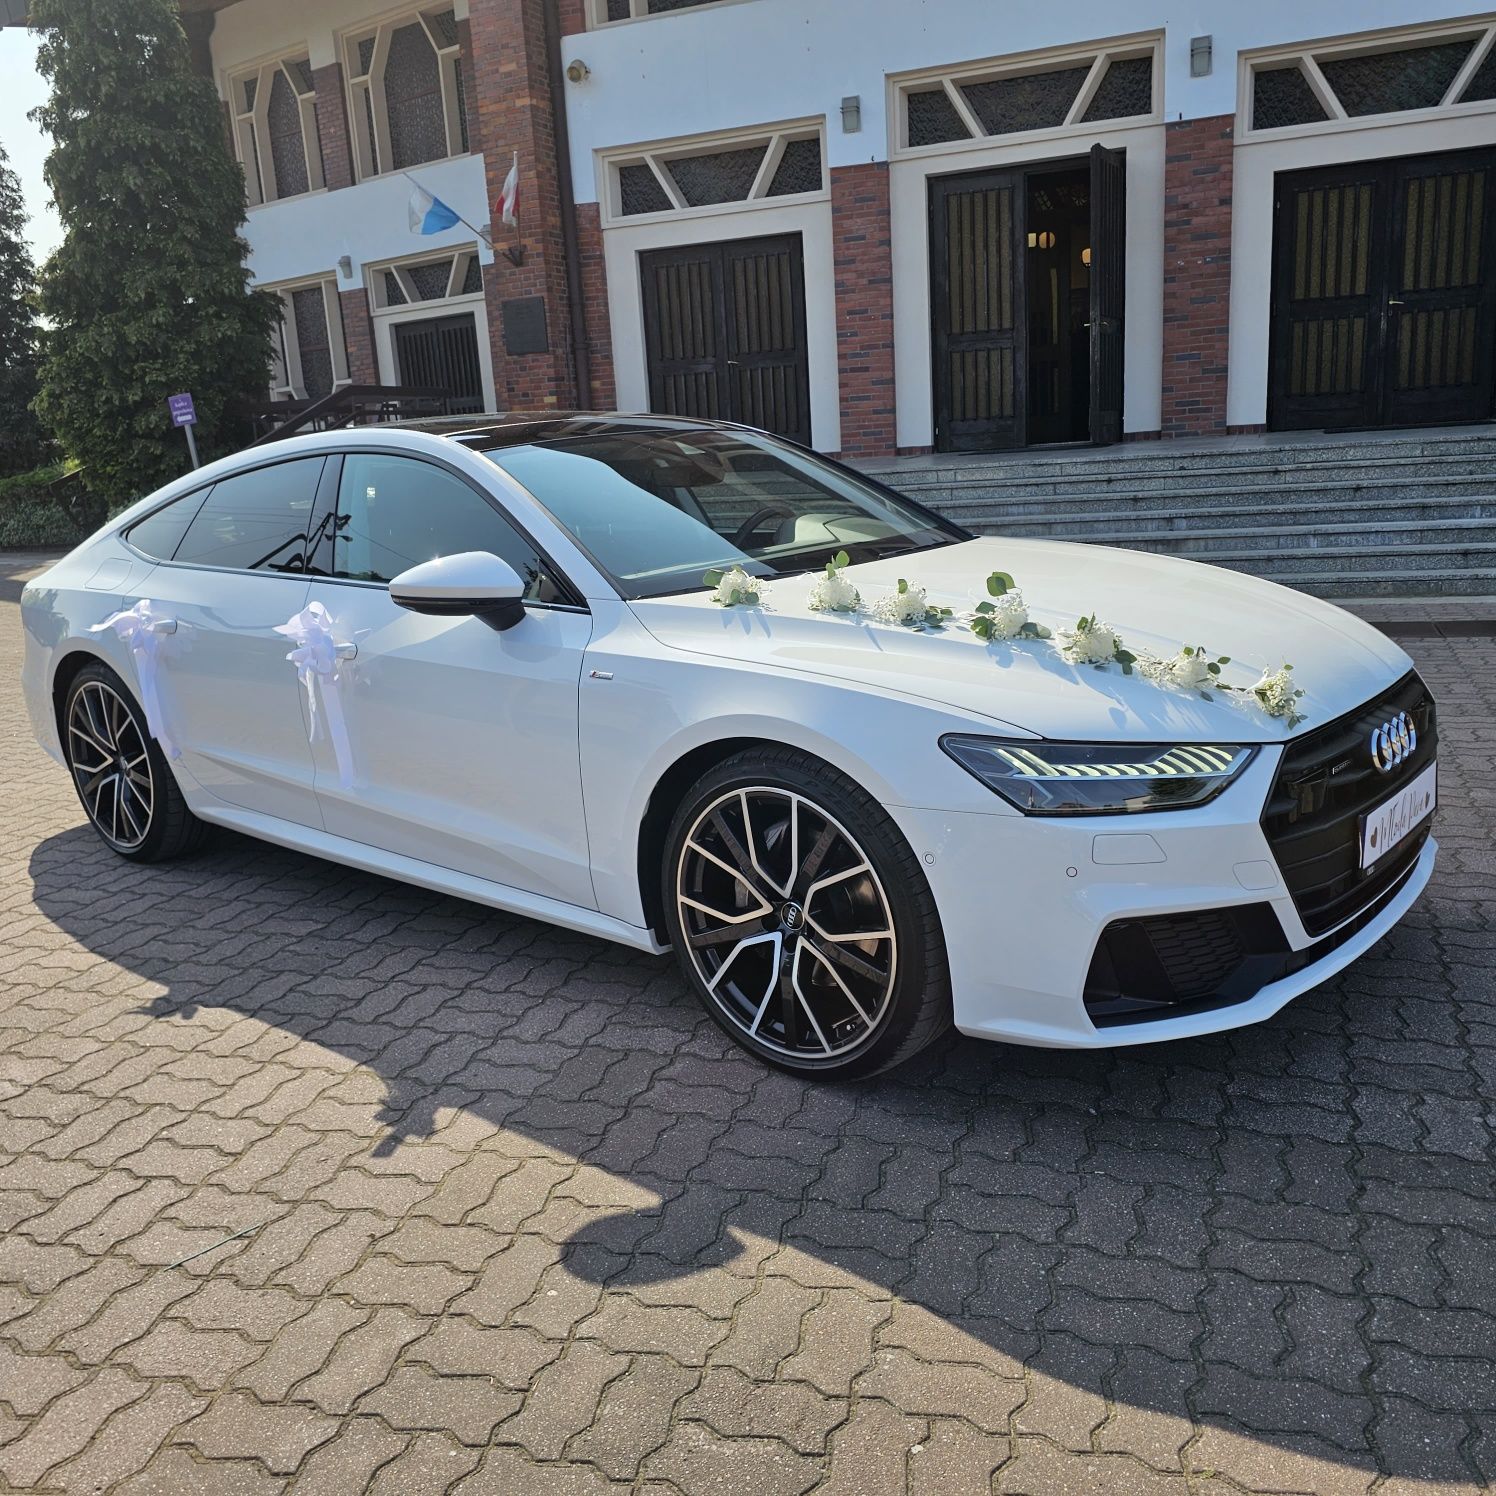 Samochód do ślubu nowe Audi A7 biały ślub najem wynajem